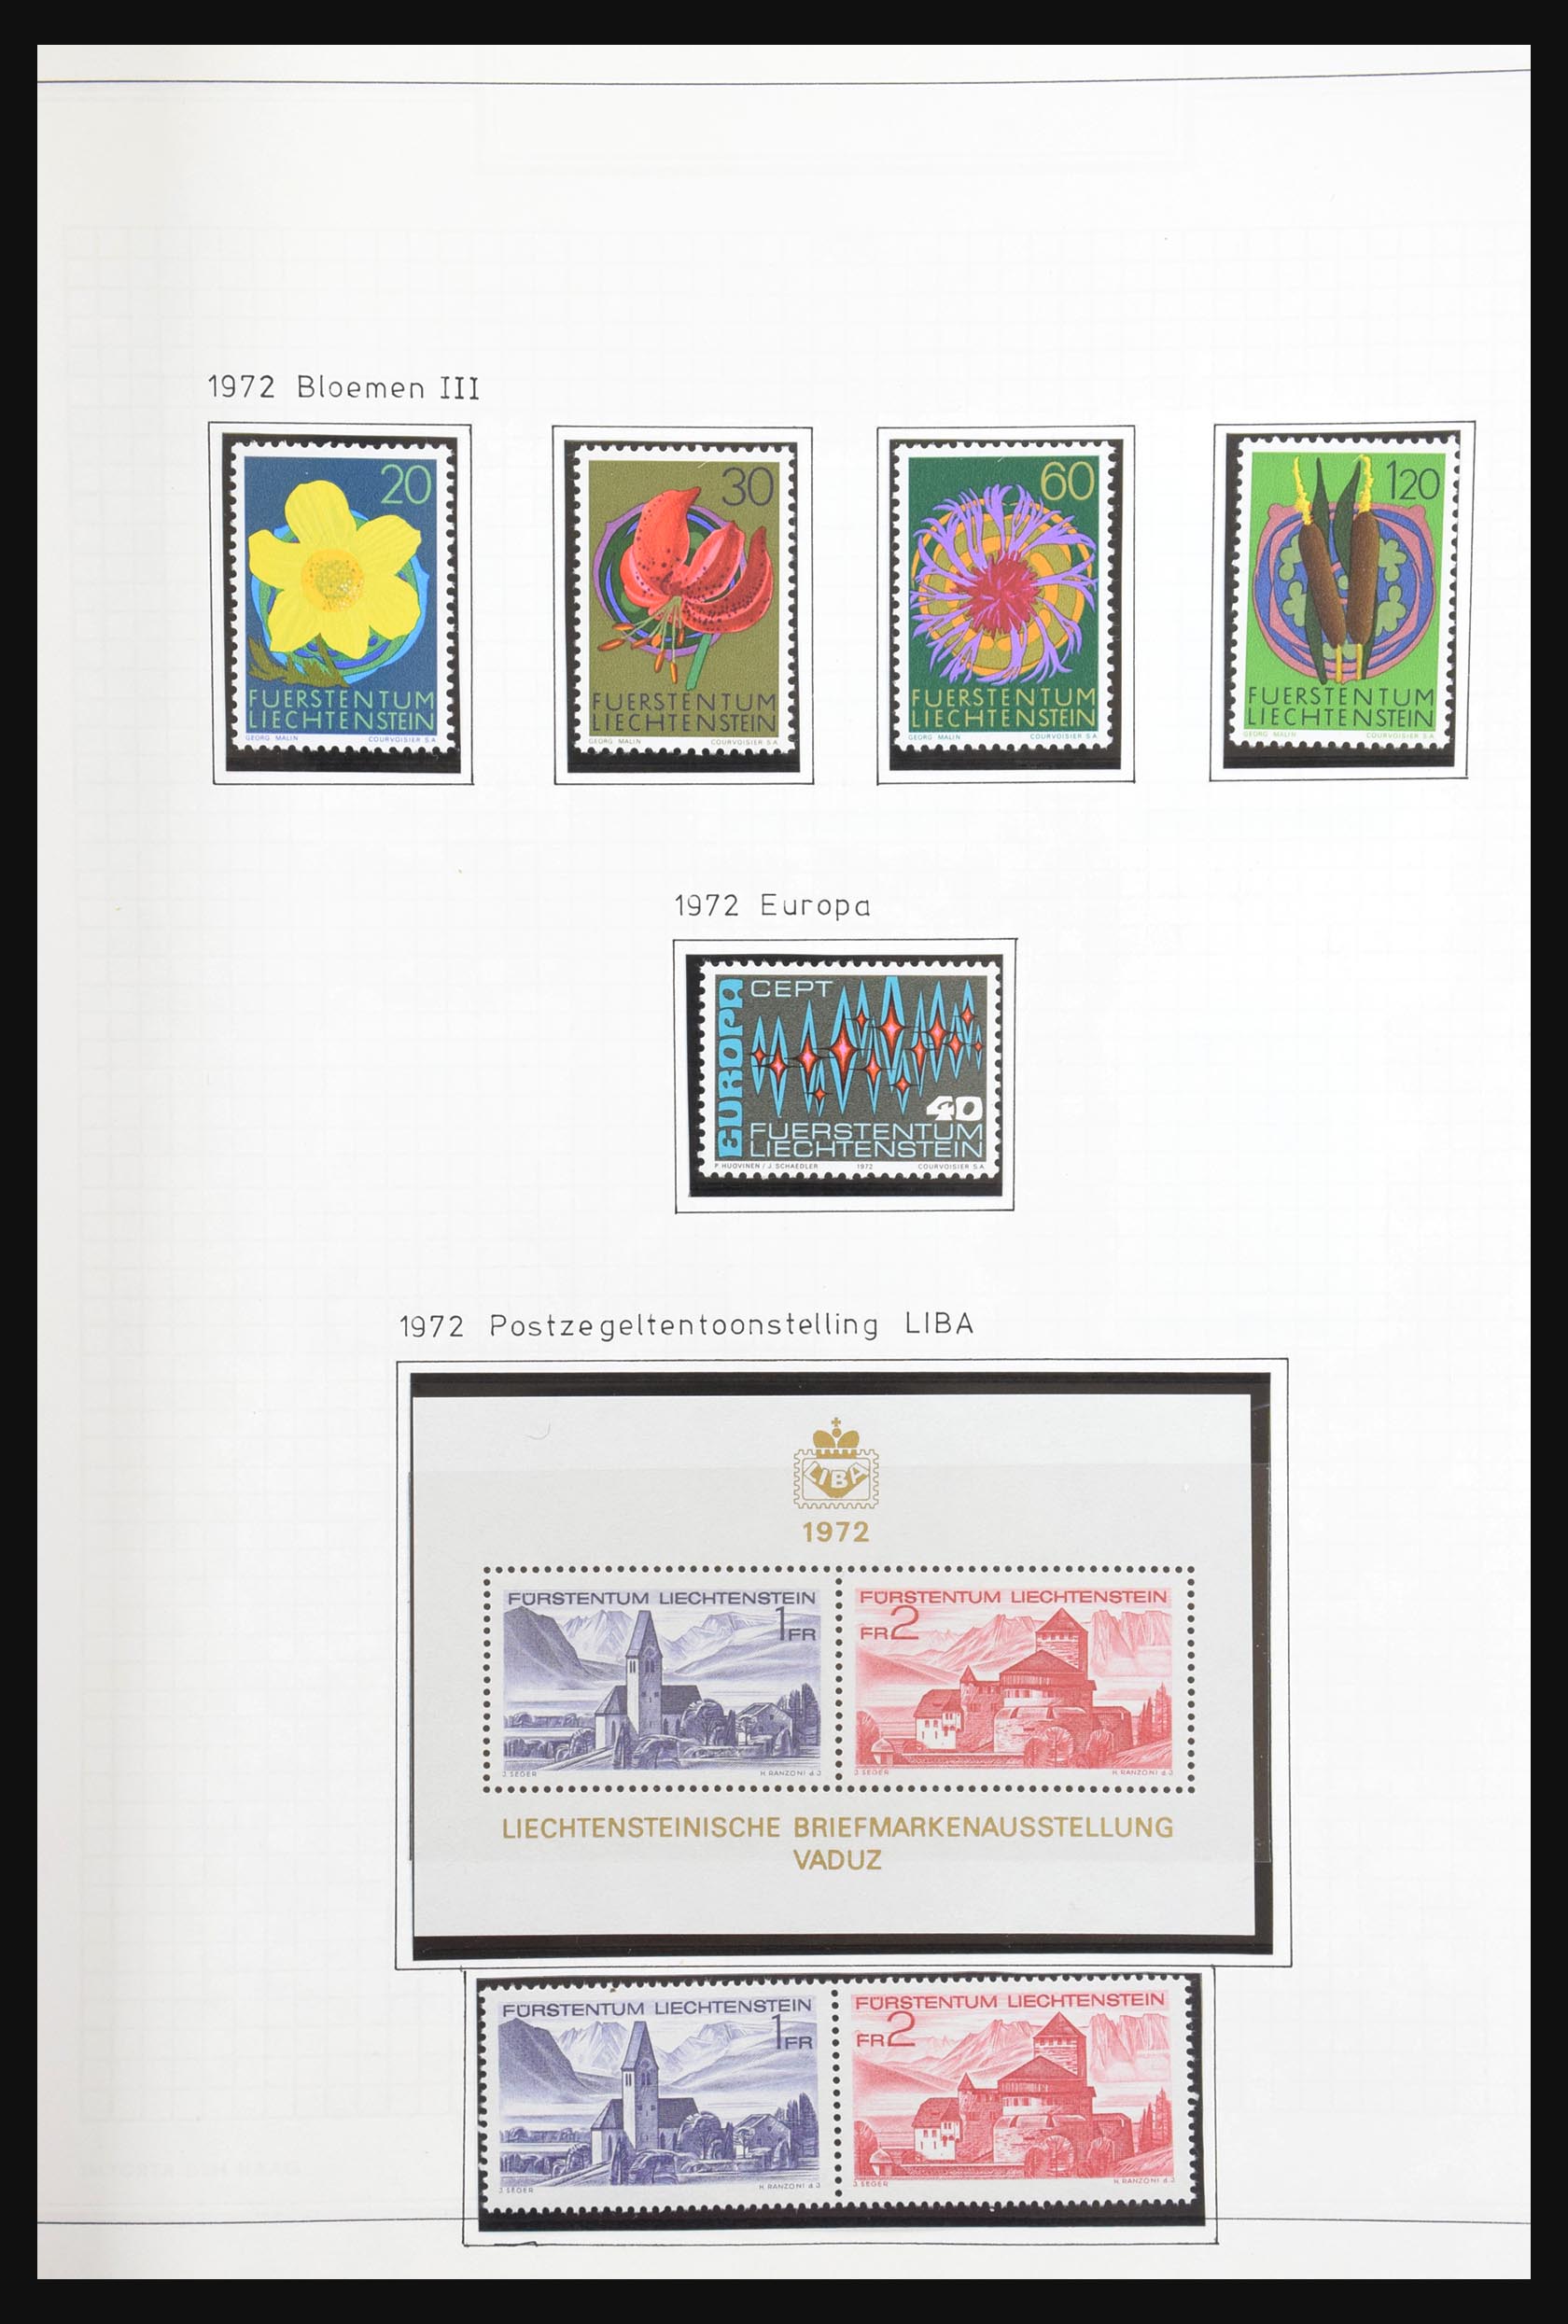 31131 054 - 31131 Liechtenstein 1912-2013.